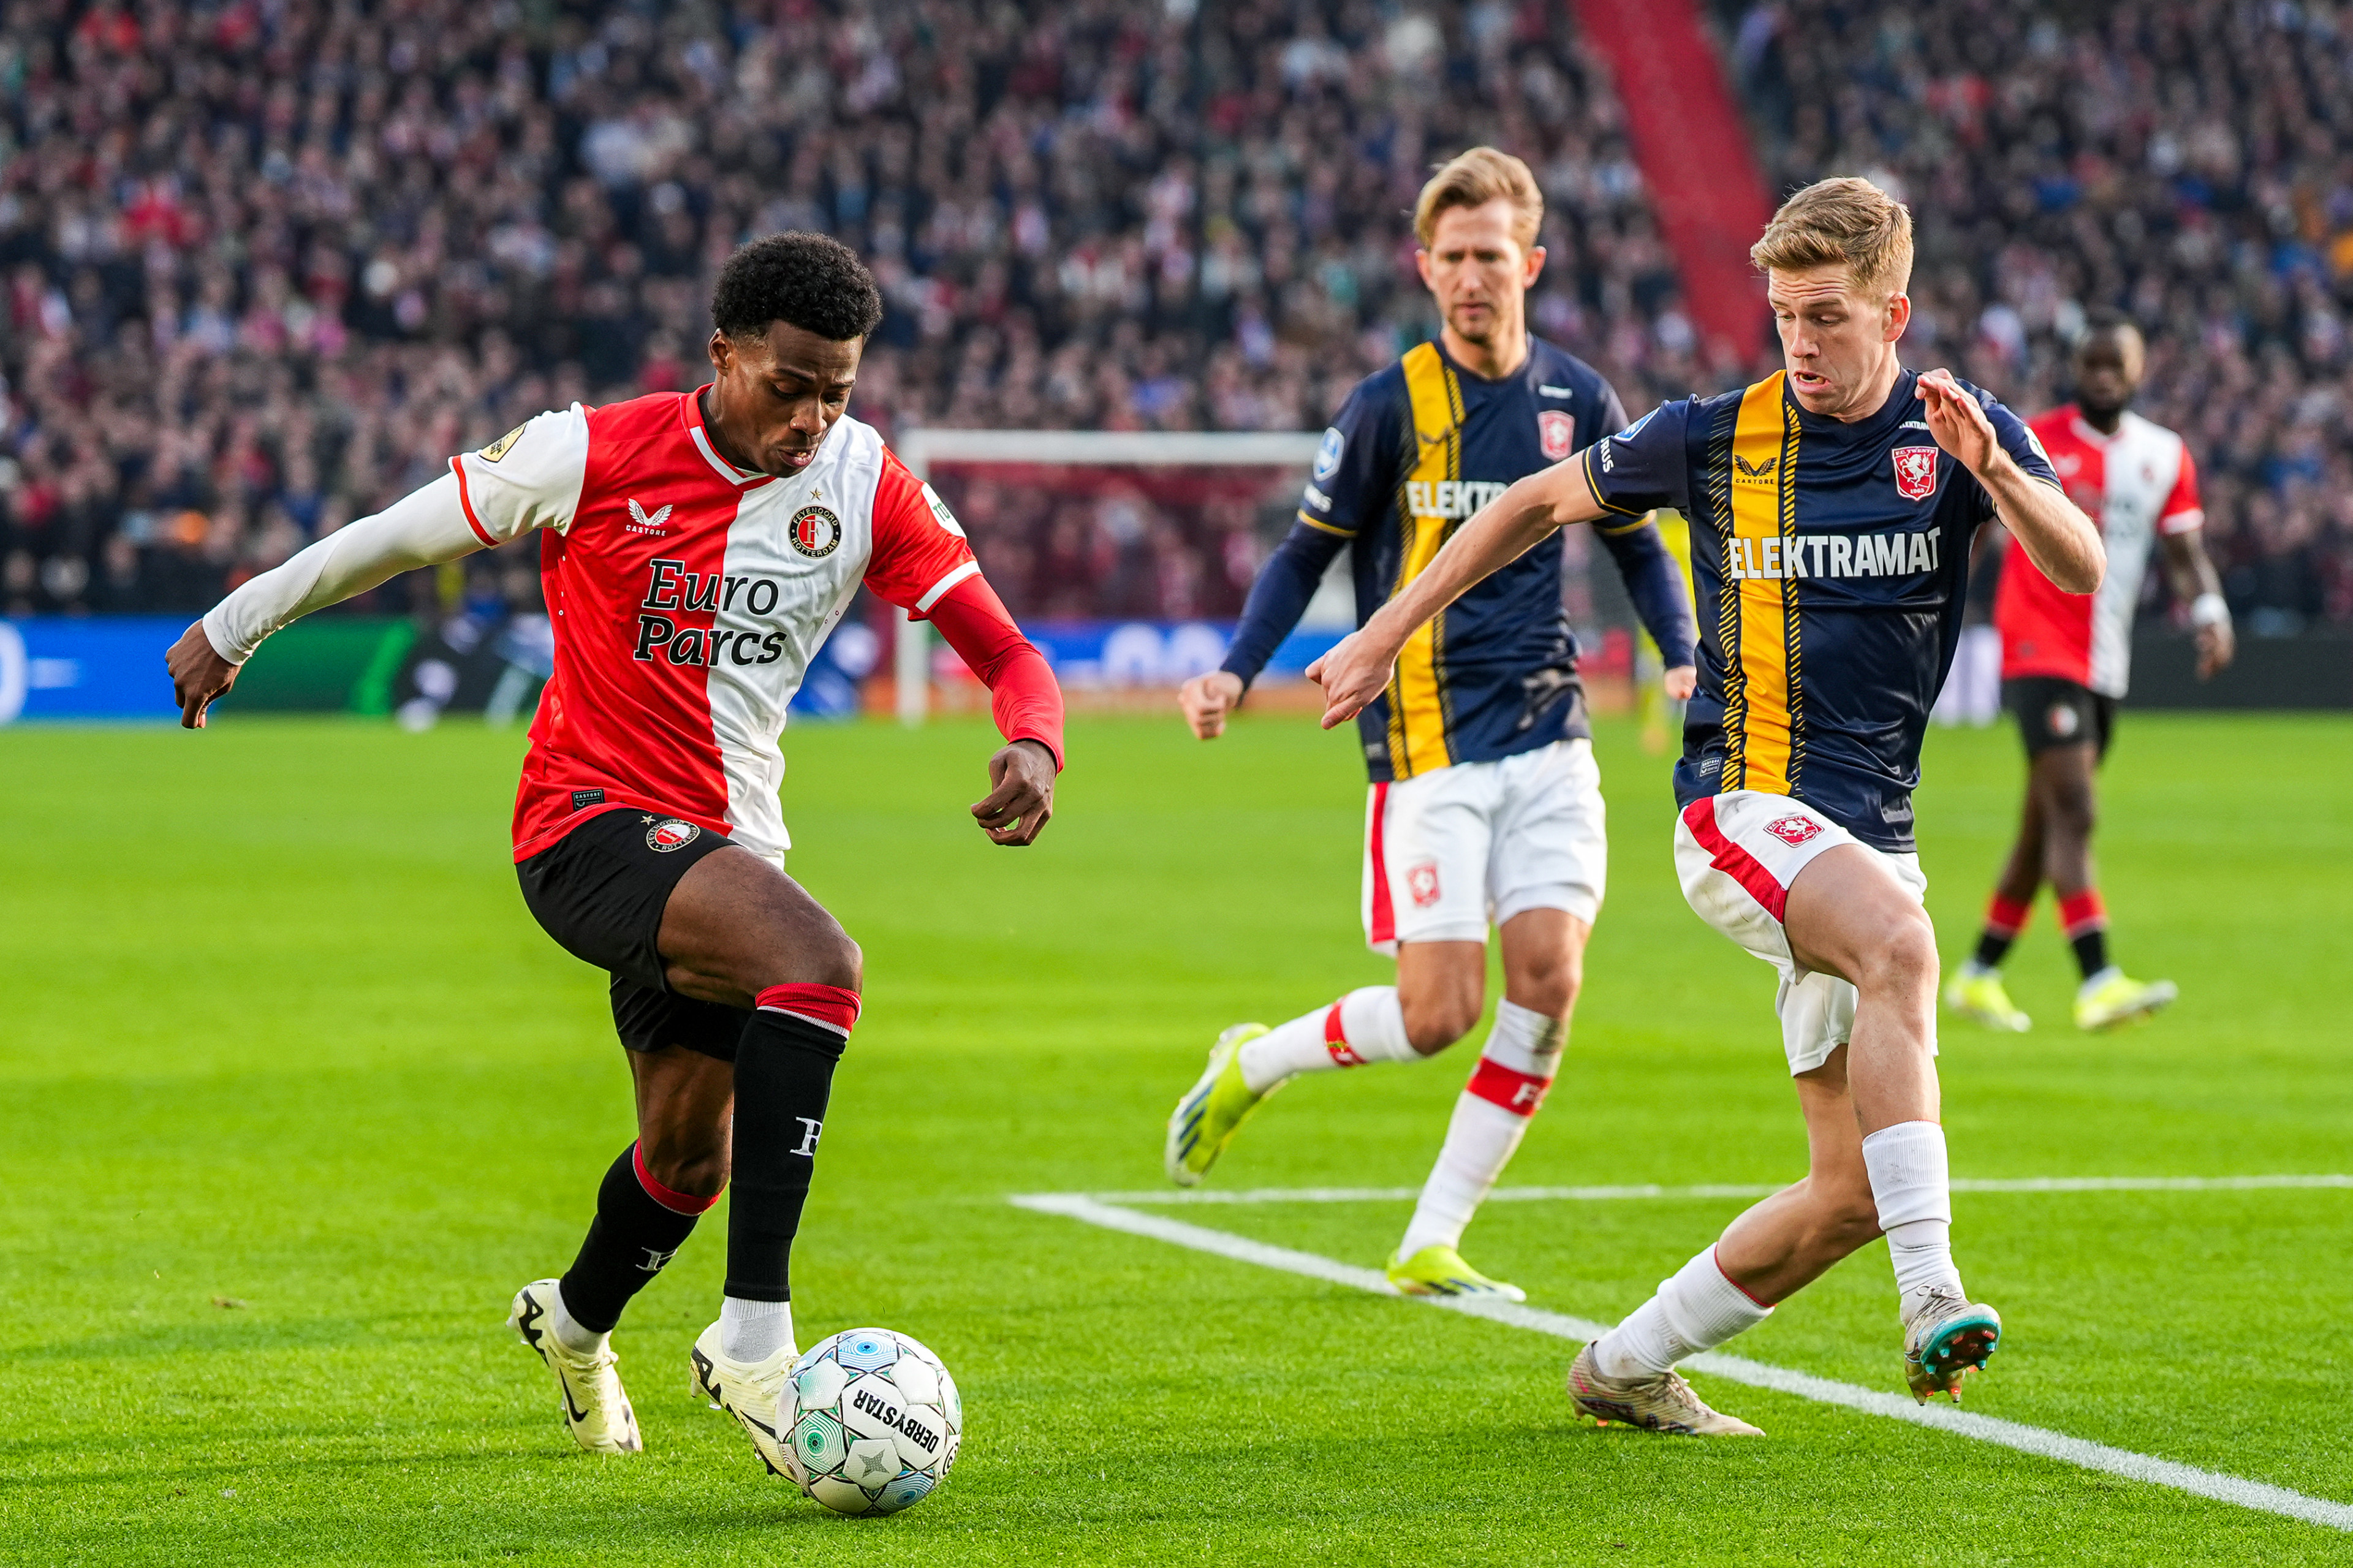 Bedenkingen over Smal-nieuws: "Vermoeden dat het Feyenoord-kamp dit heeft gelekt"